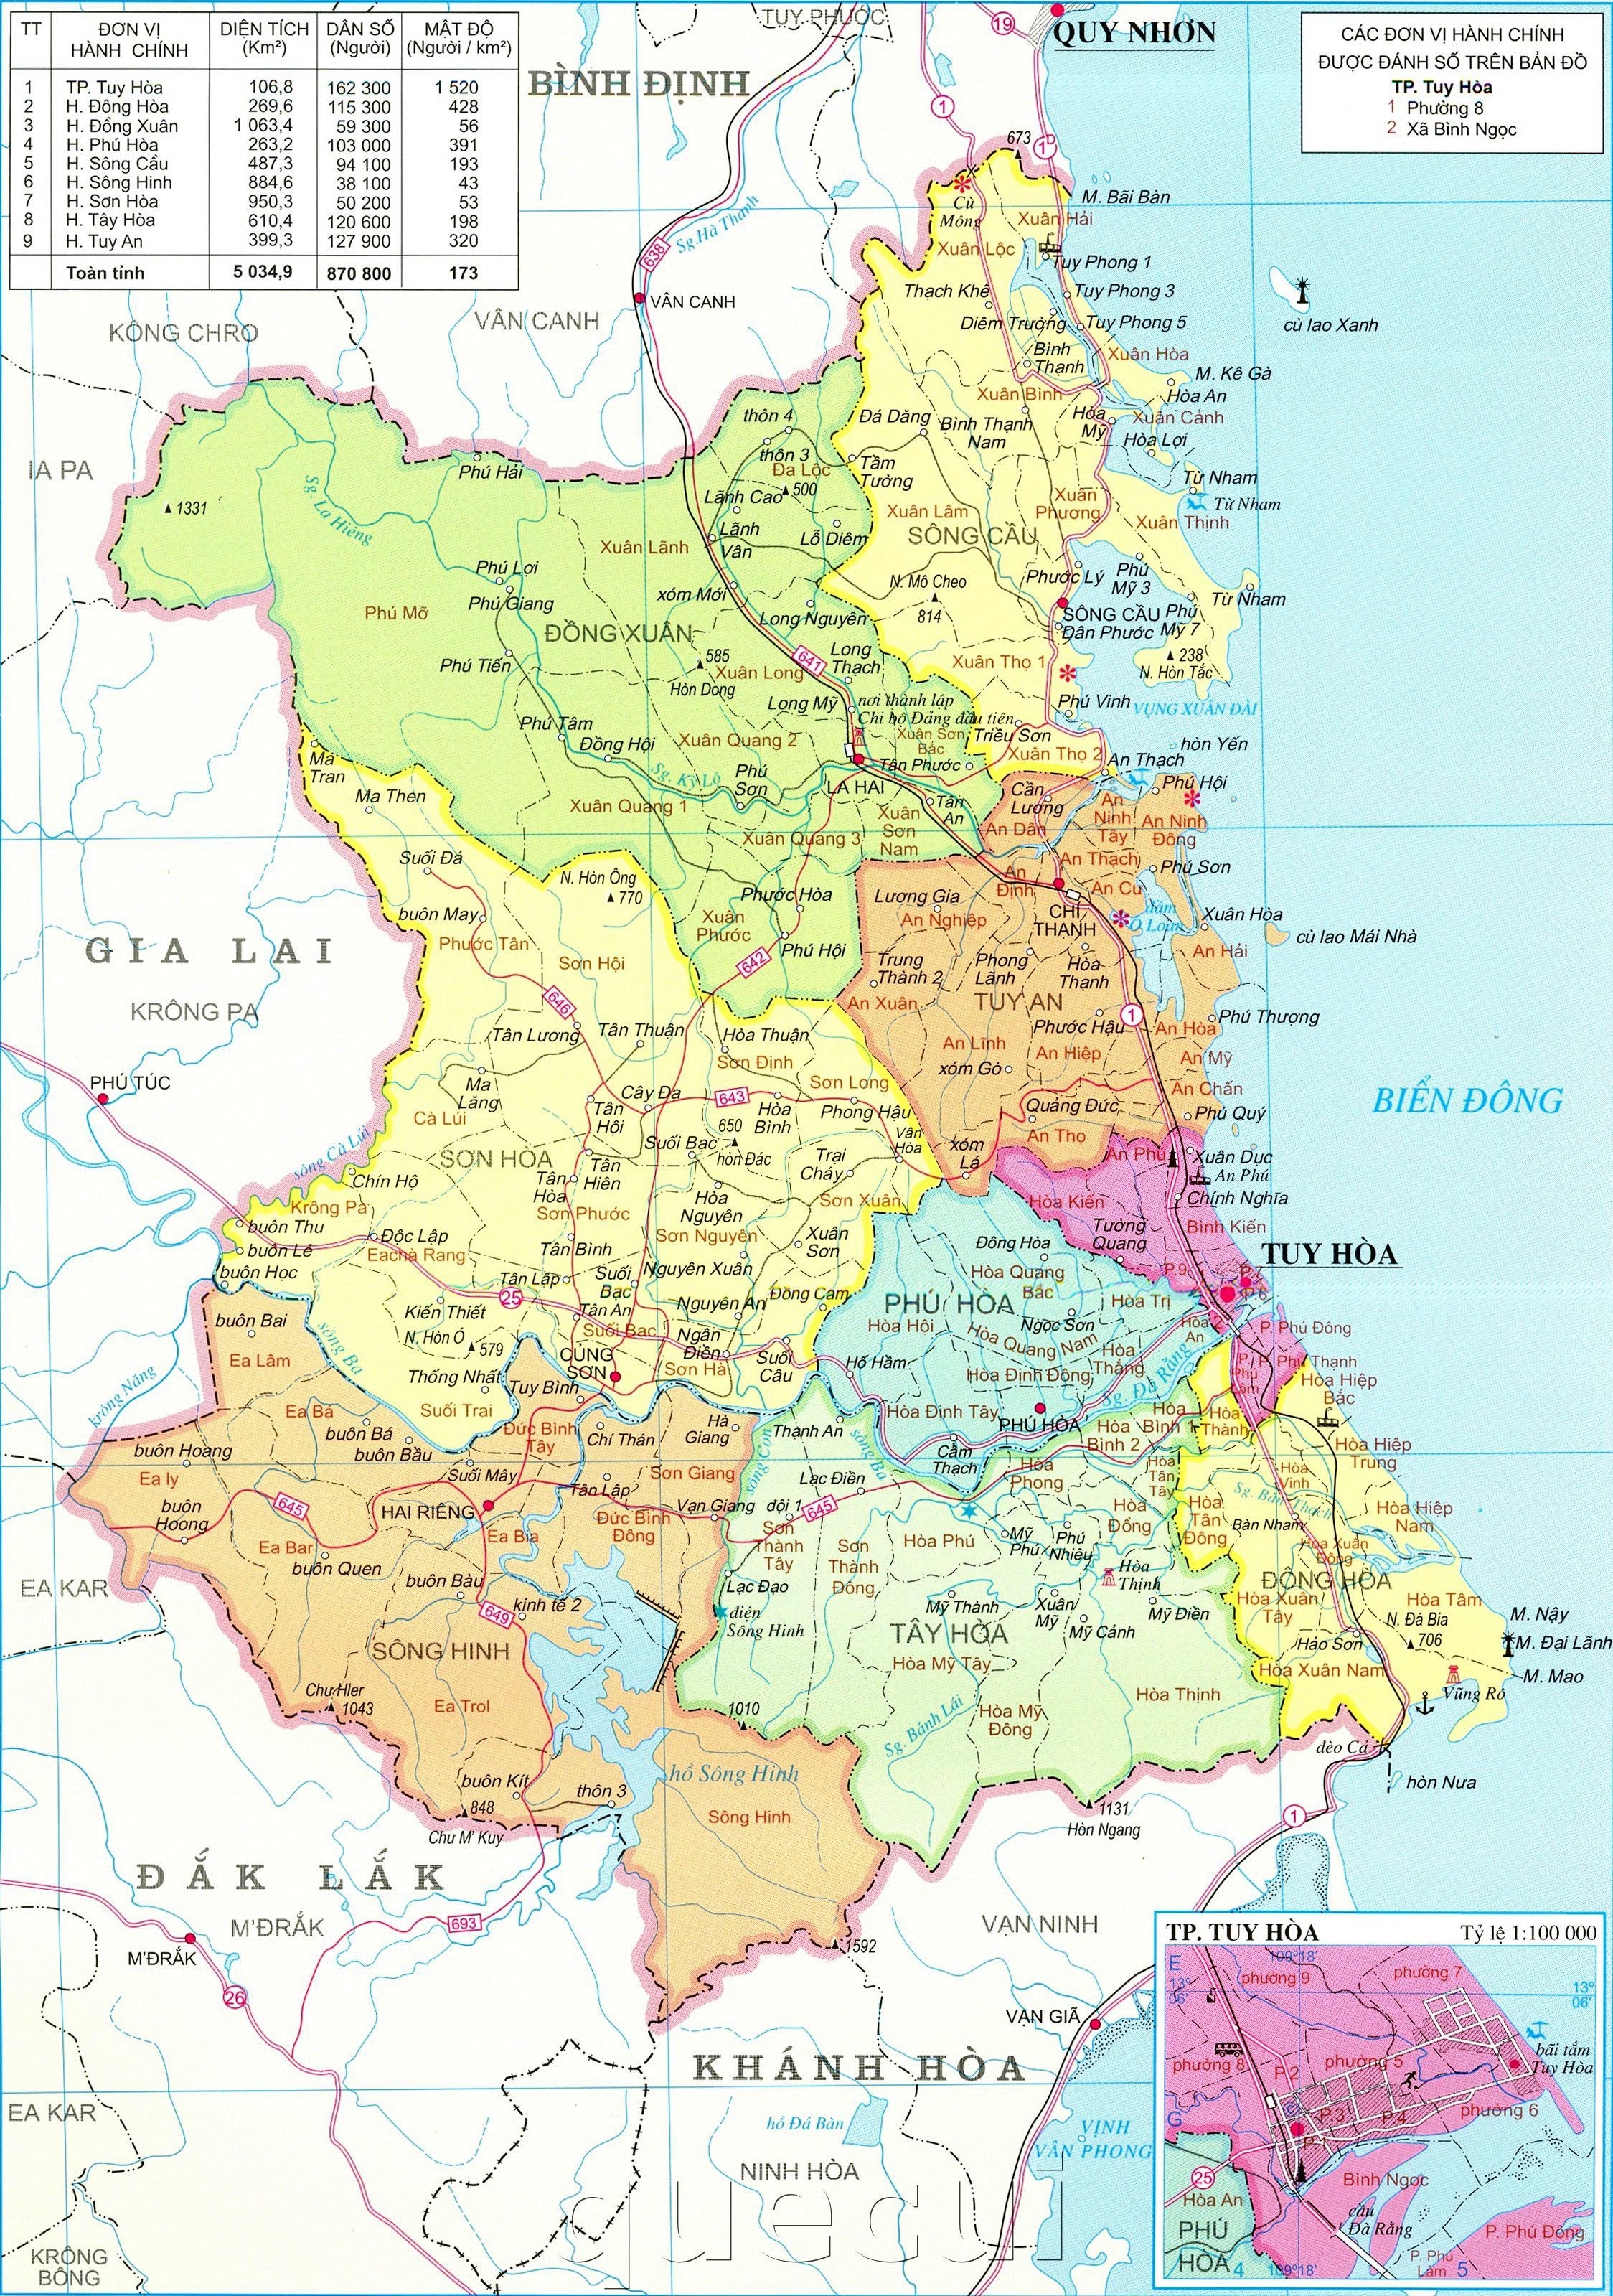 Bản đồ Phú Yên sẽ cung cấp cho bạn tất cả các thông tin quan trọng về địa hình, danh lam thắng cảnh và hệ thống giao thông tại Phú Yên. Khám phá cùng bản đồ này để chuẩn bị cho chuyến hành trình tuyệt vời nhất tại Phú Yên!